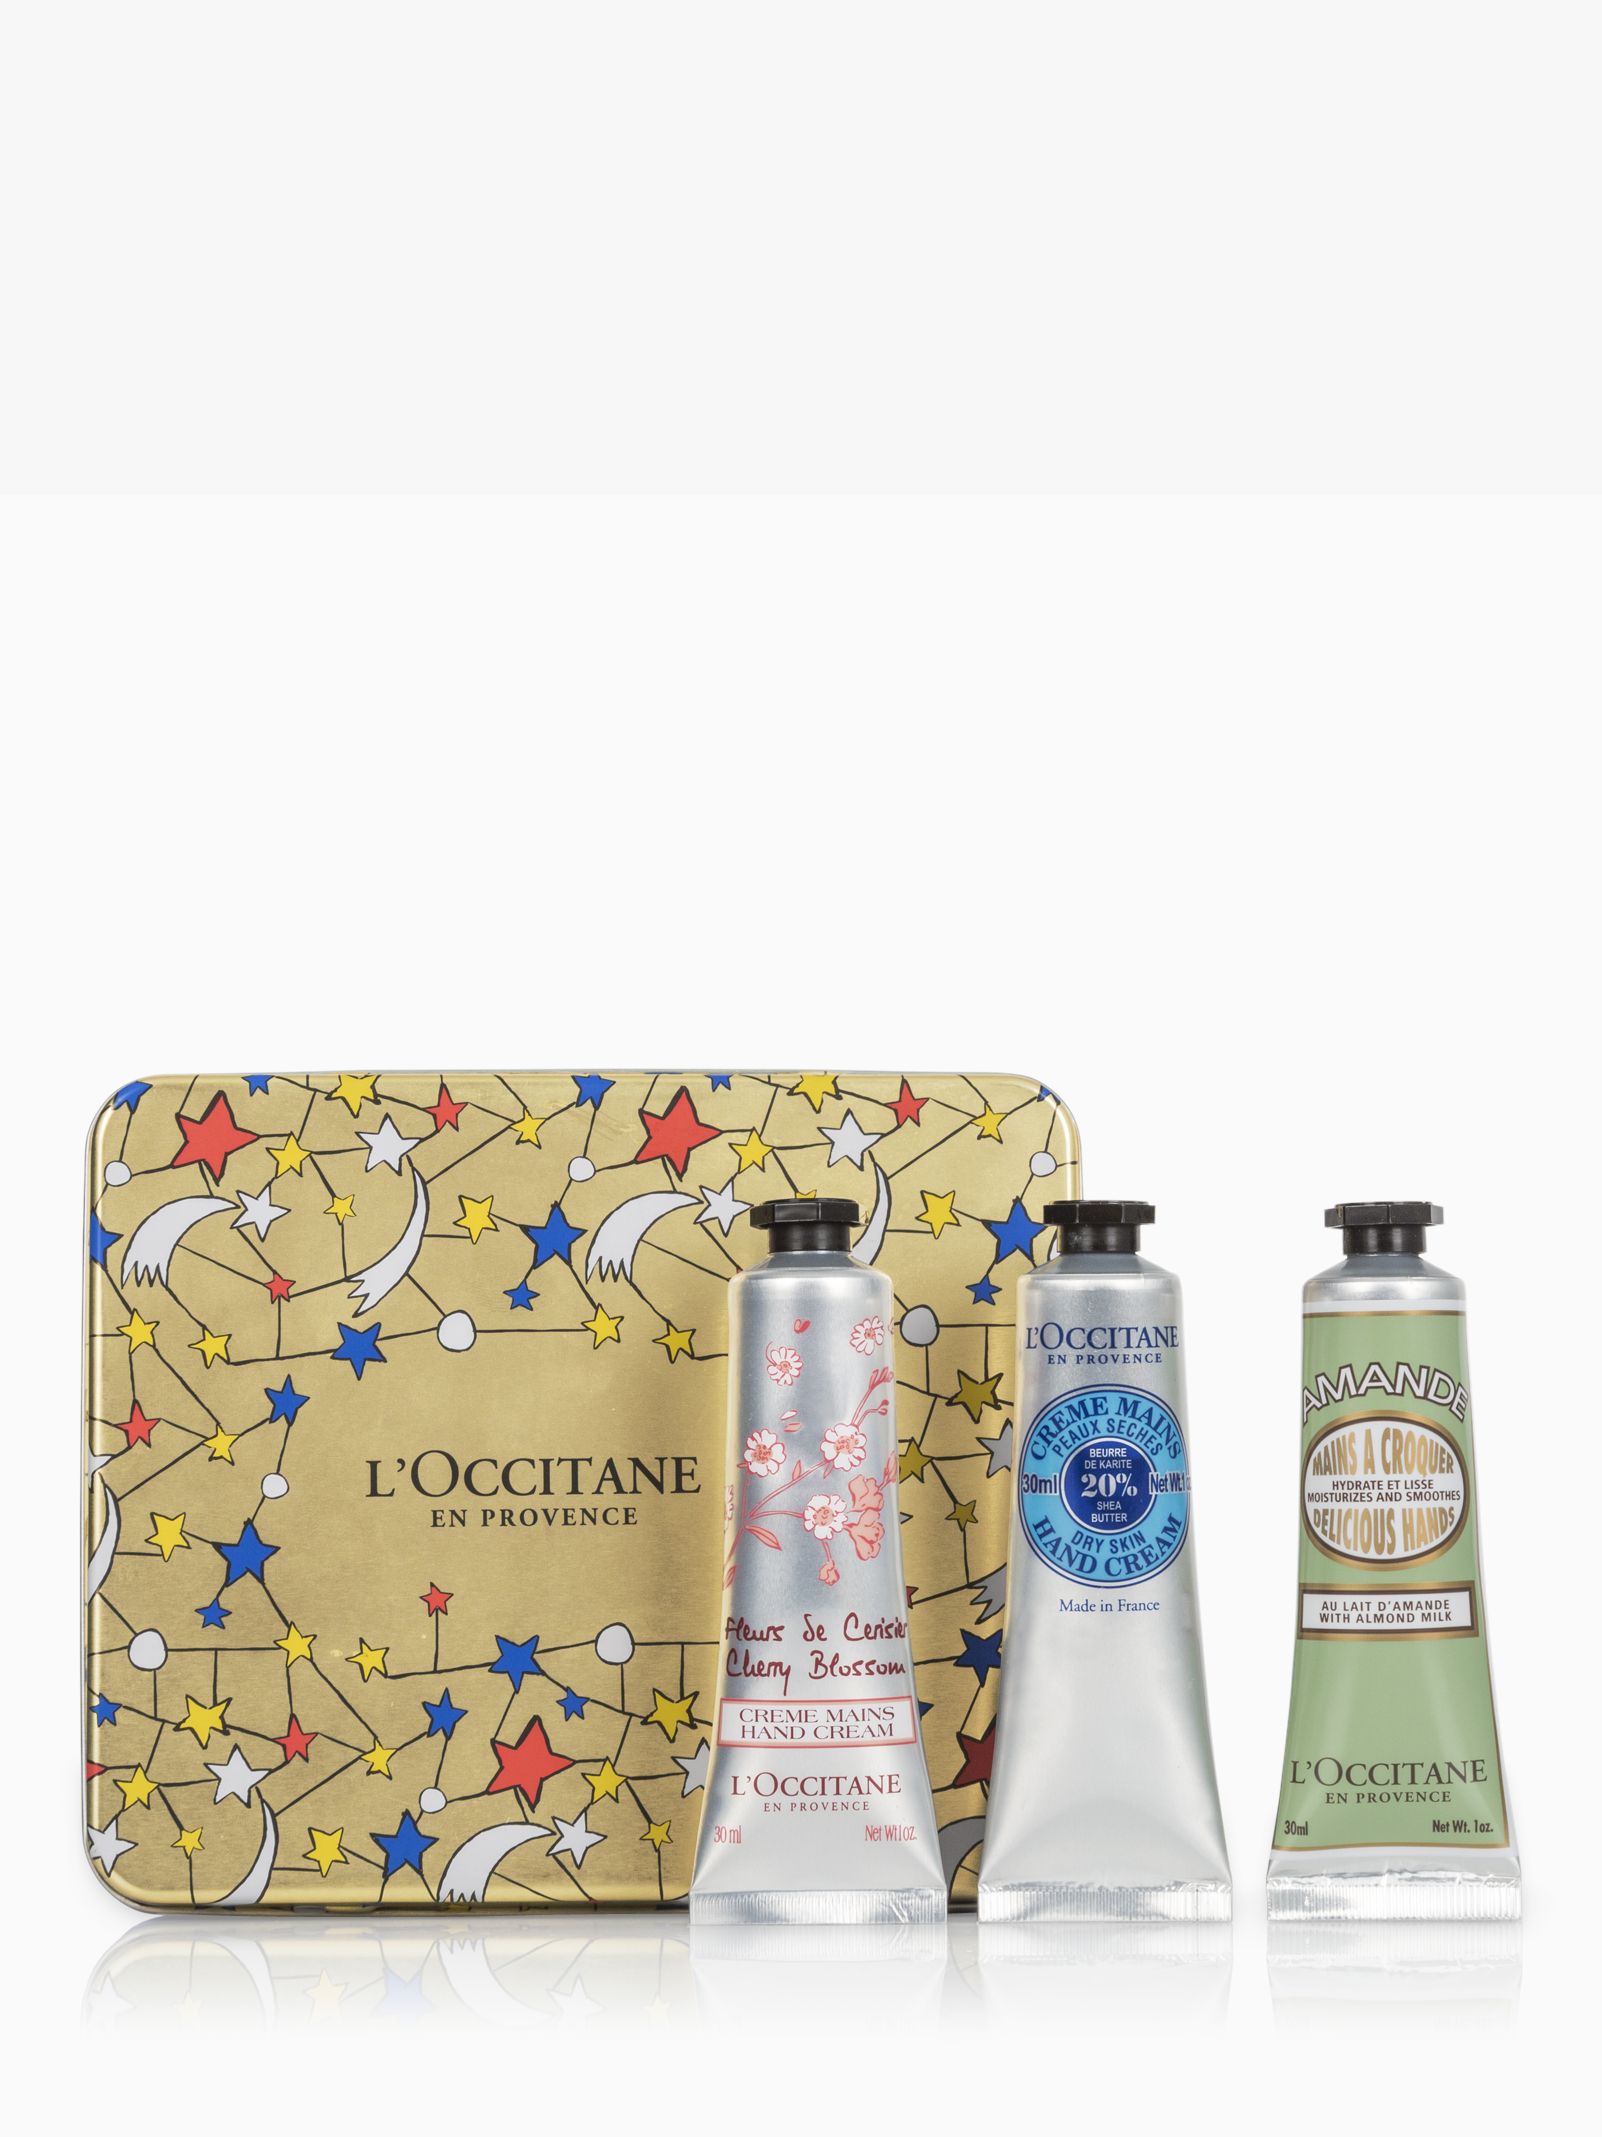 l'occitane travel exclusive hand cream